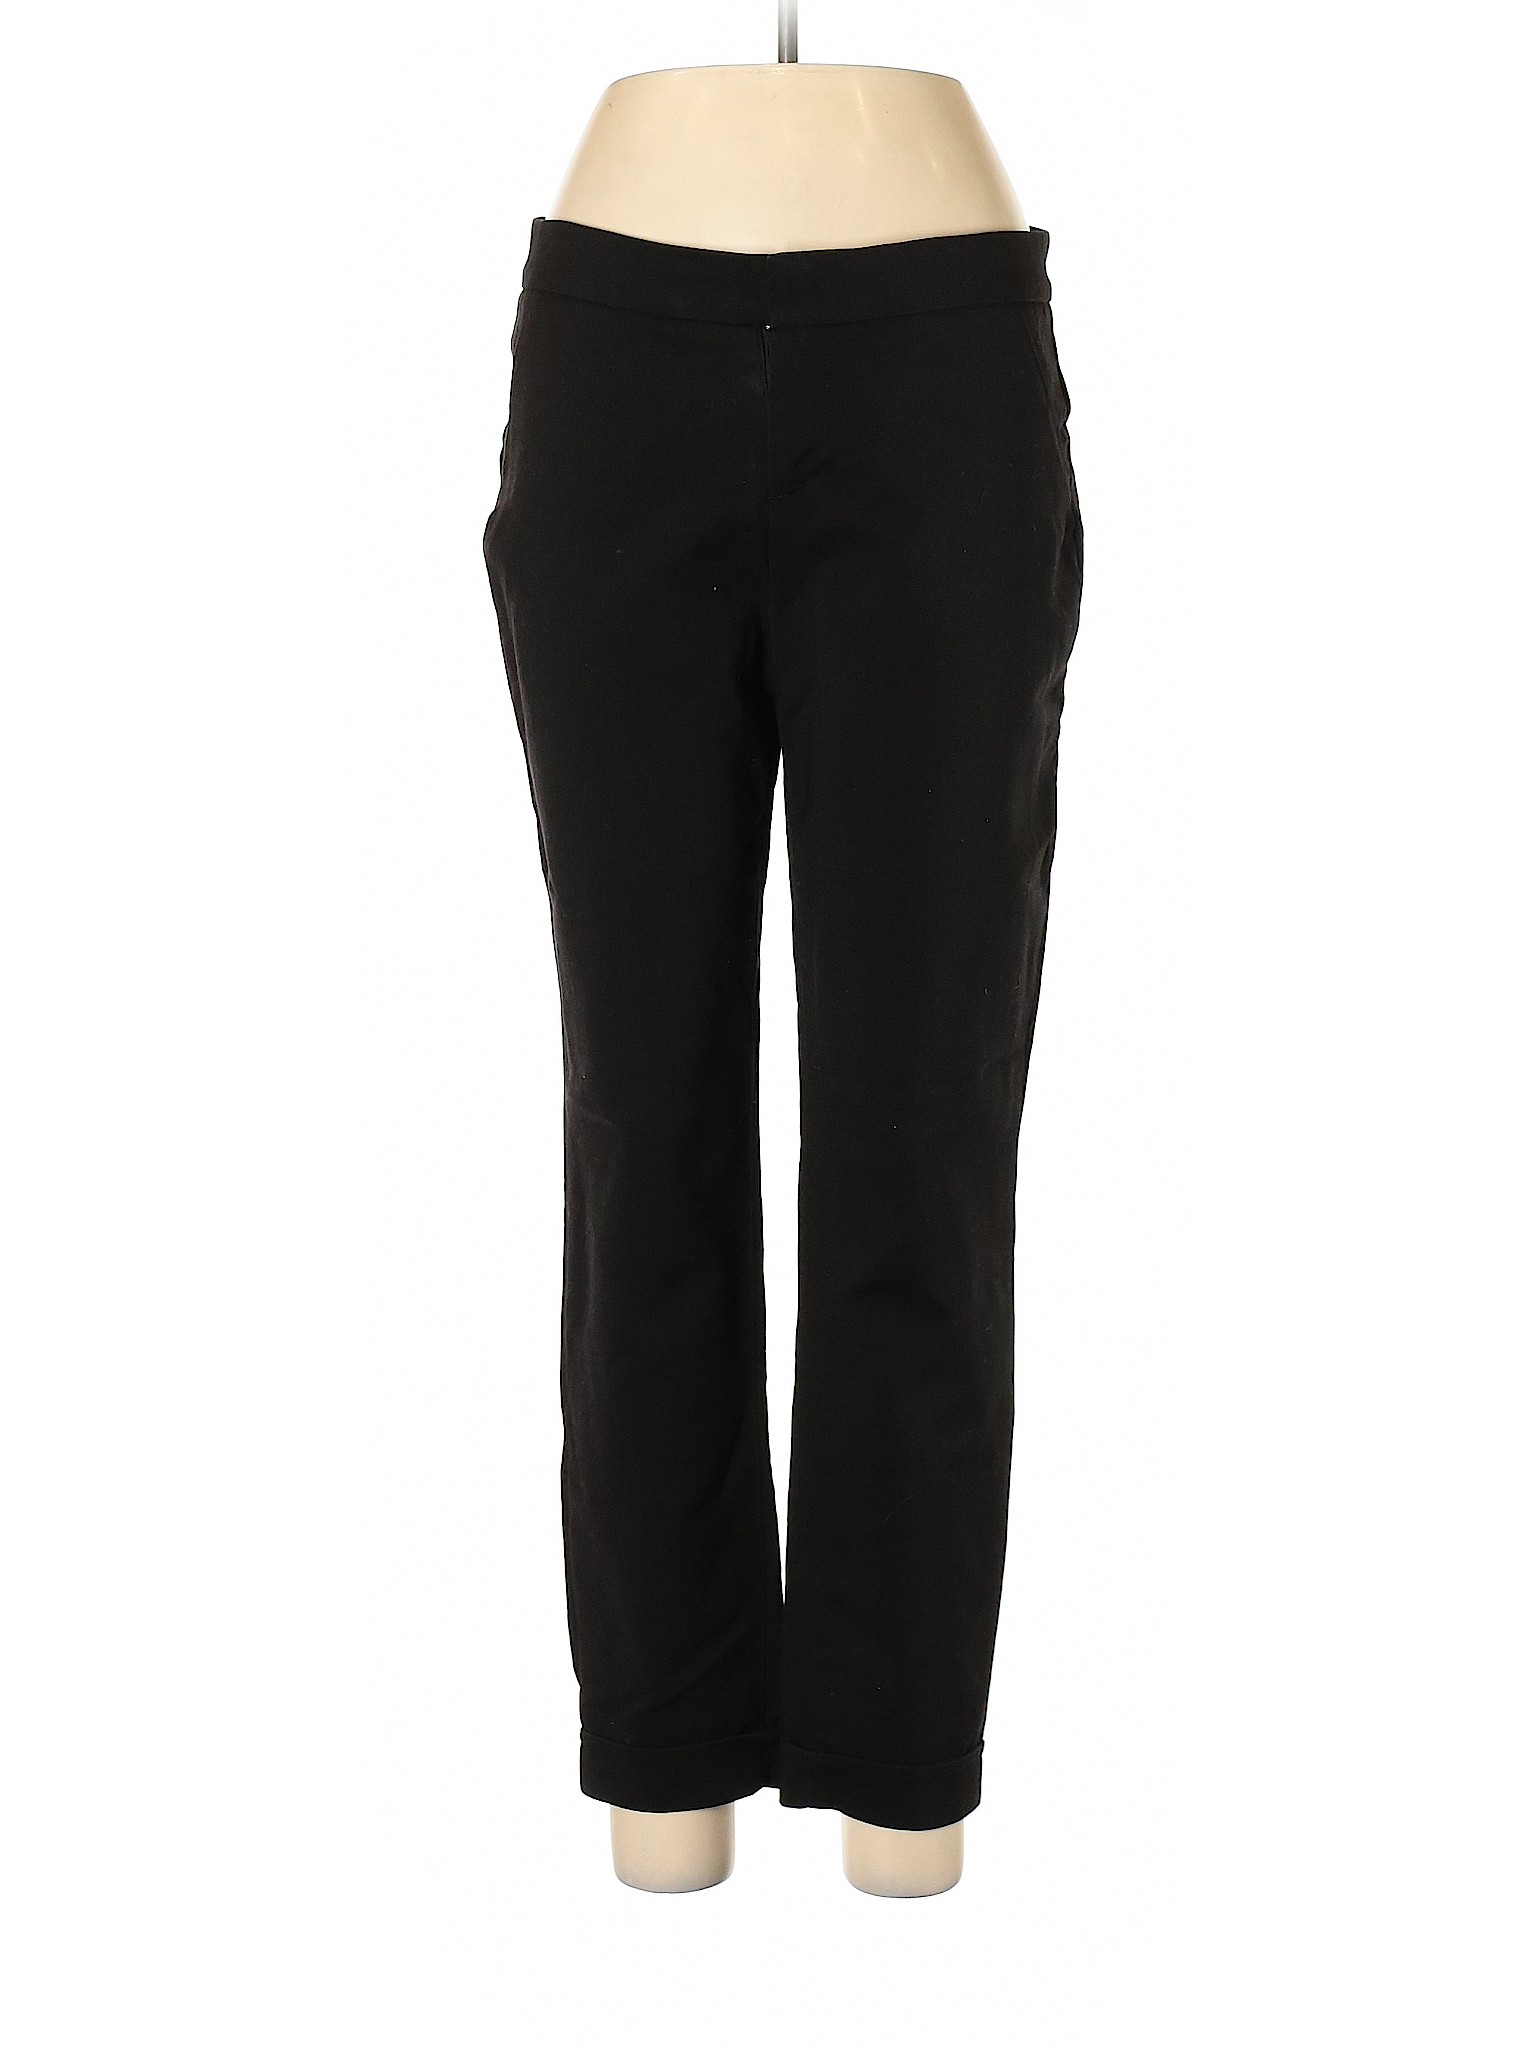 Saks Fifth Avenue Women Black Casual Pants 10 | eBay